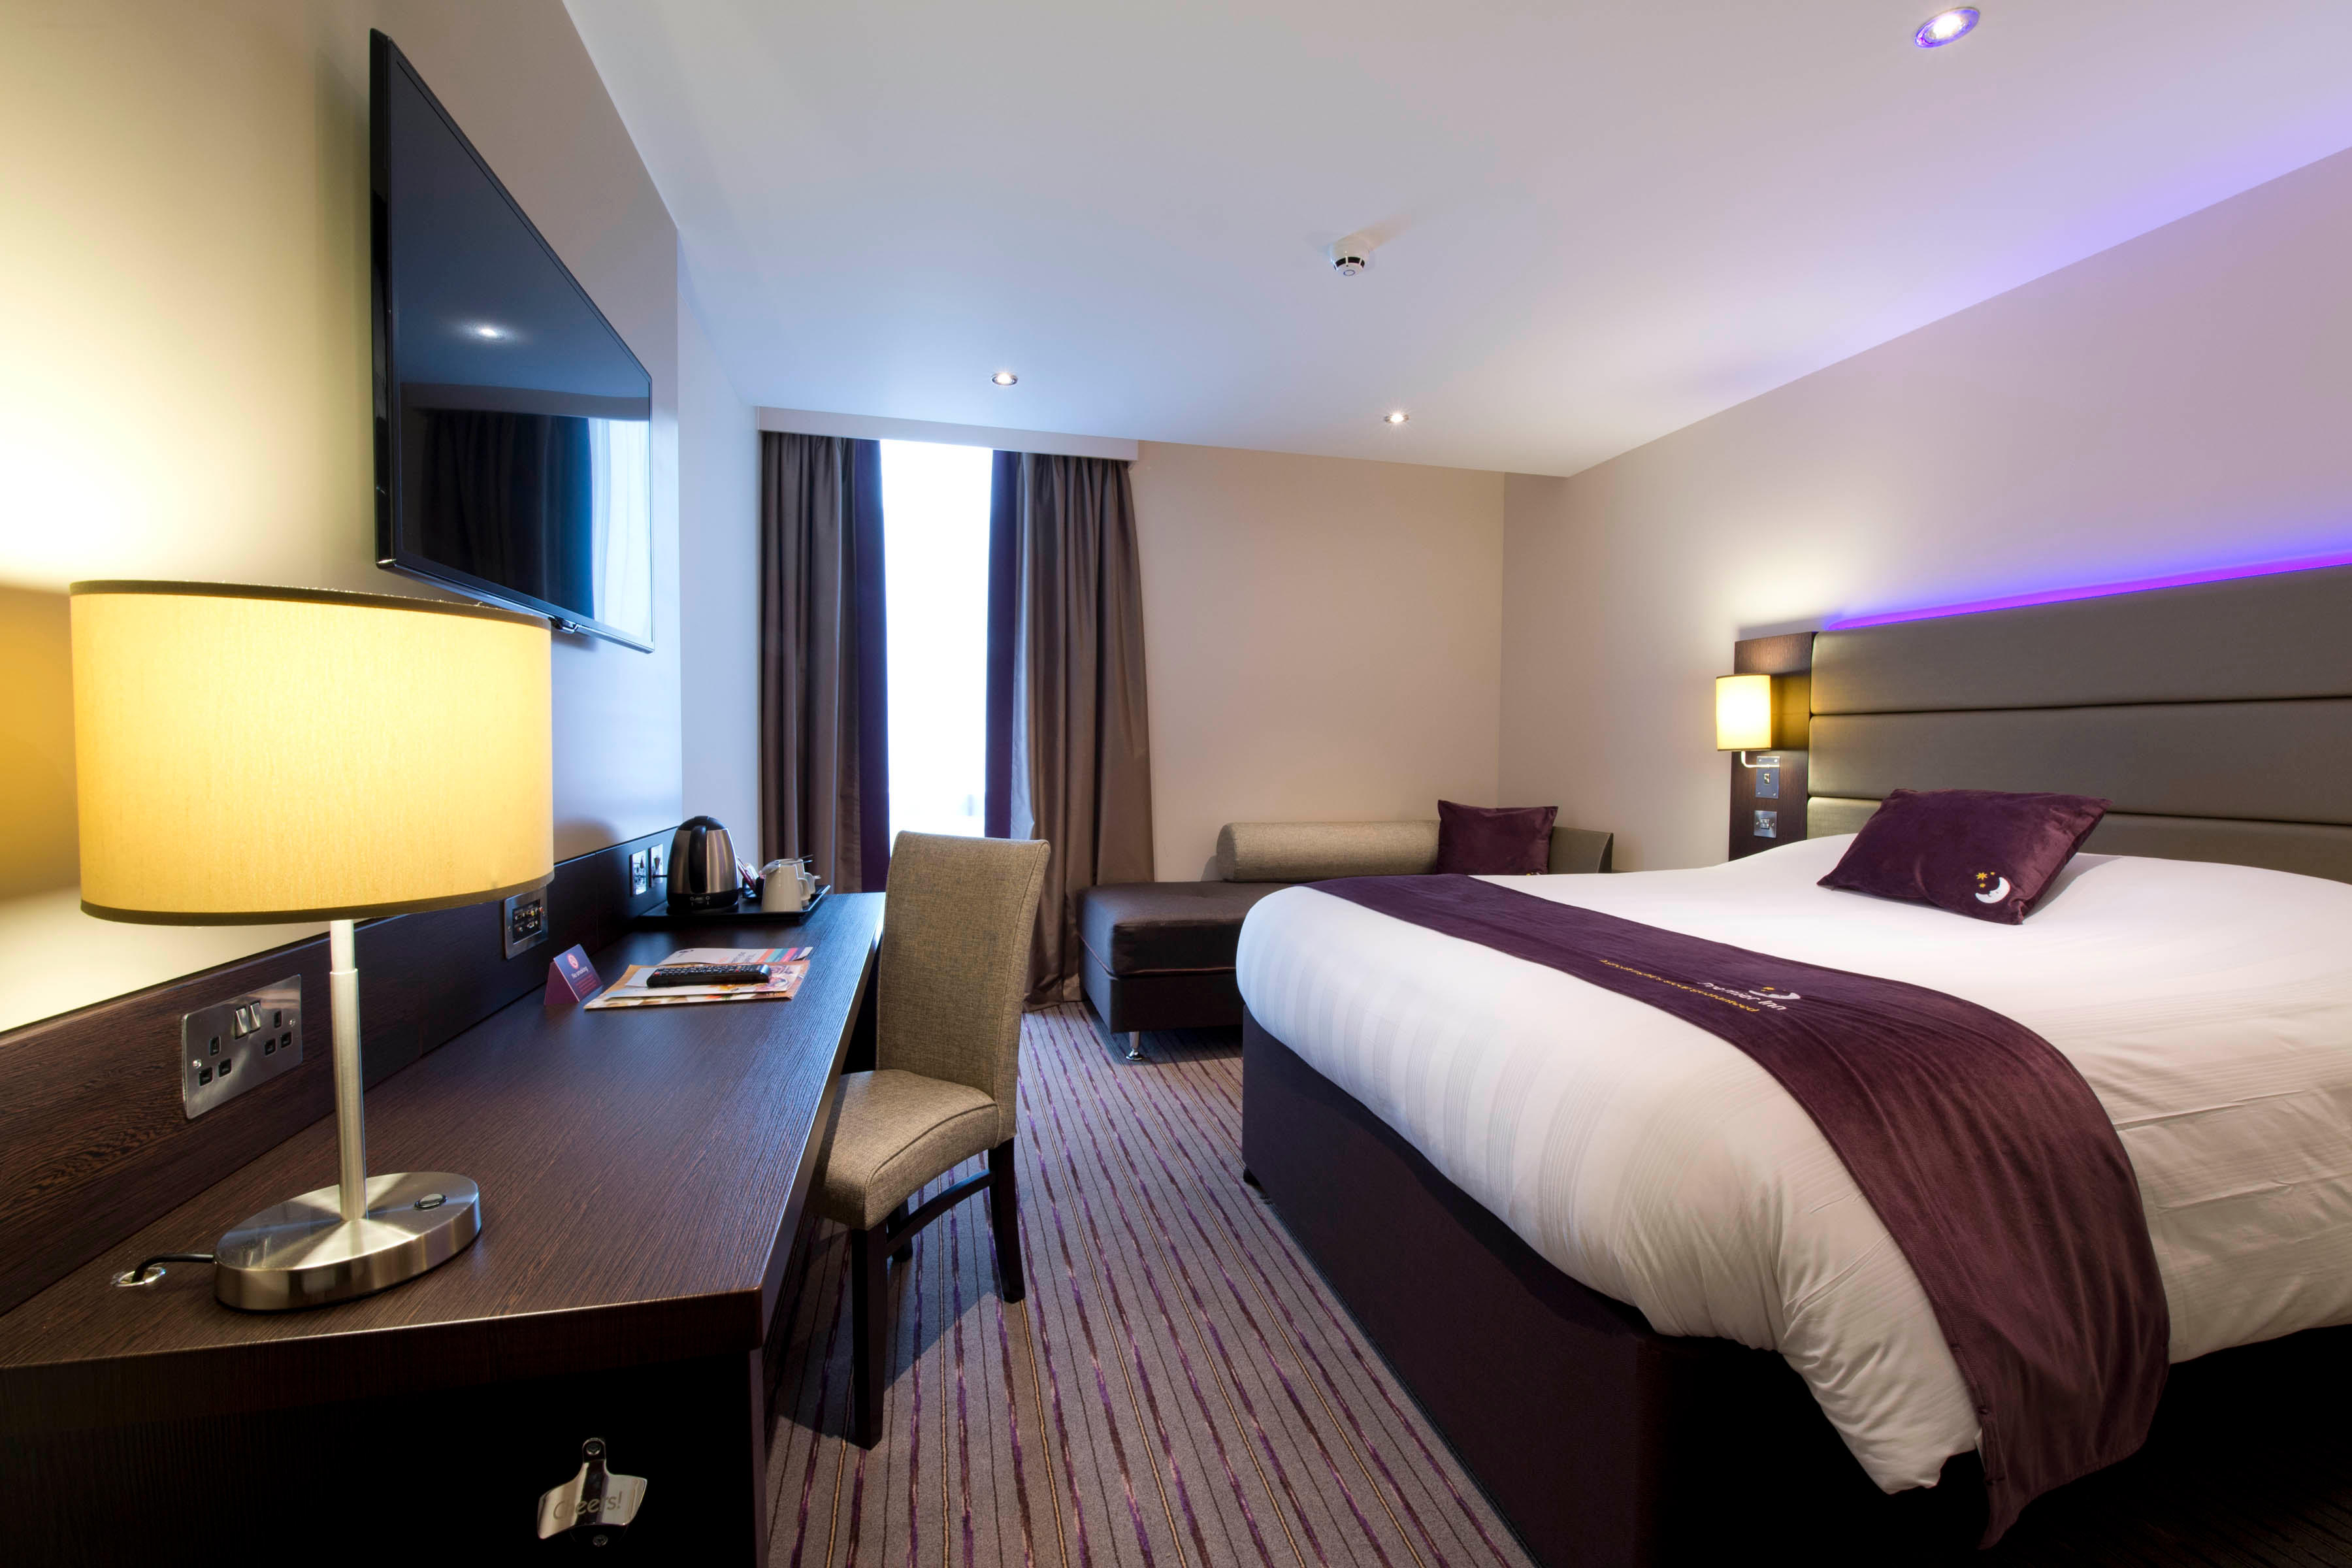 Premier Inn bedroom Premier Inn London Sidcup hotel Sidcup 03332 346539